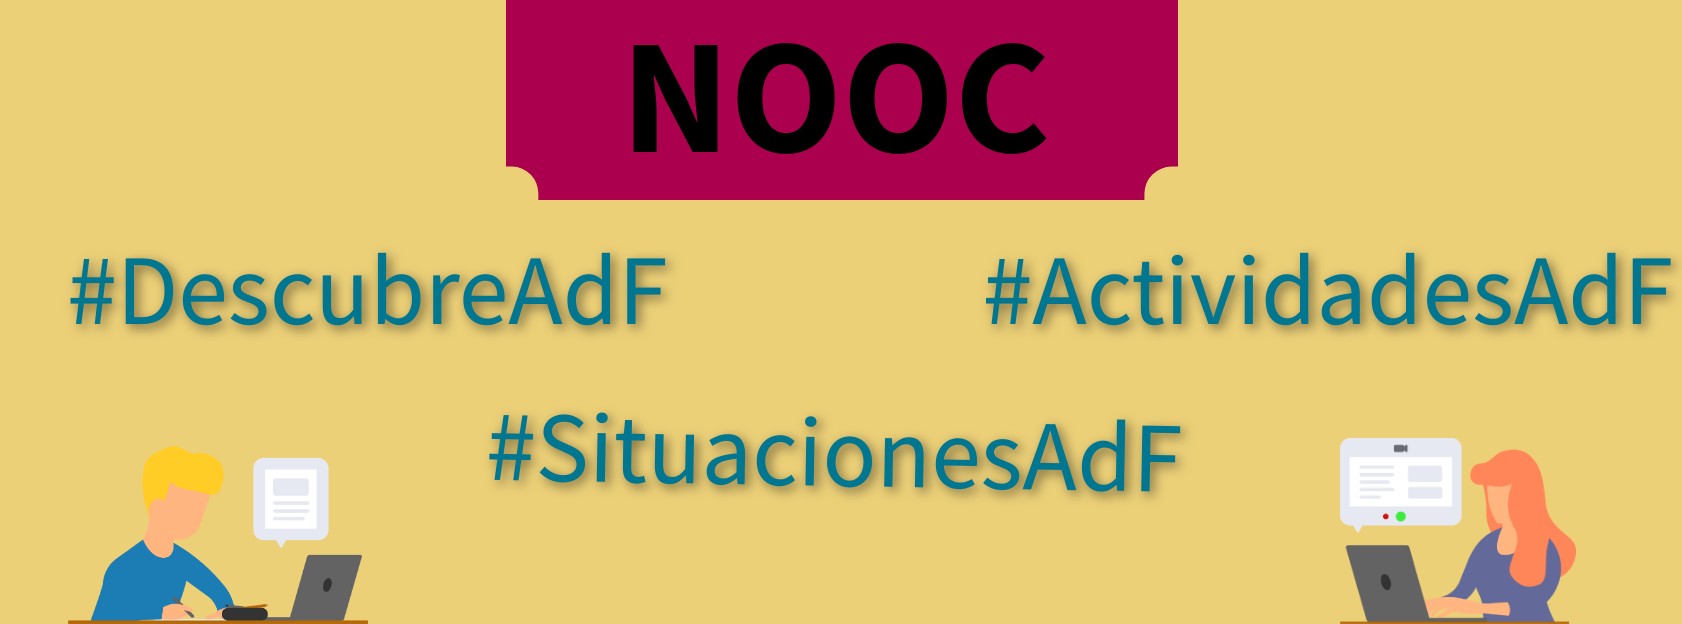 Banner con NOOCs #DescubreAdF #ActividadesAdF #SituacionesAdF